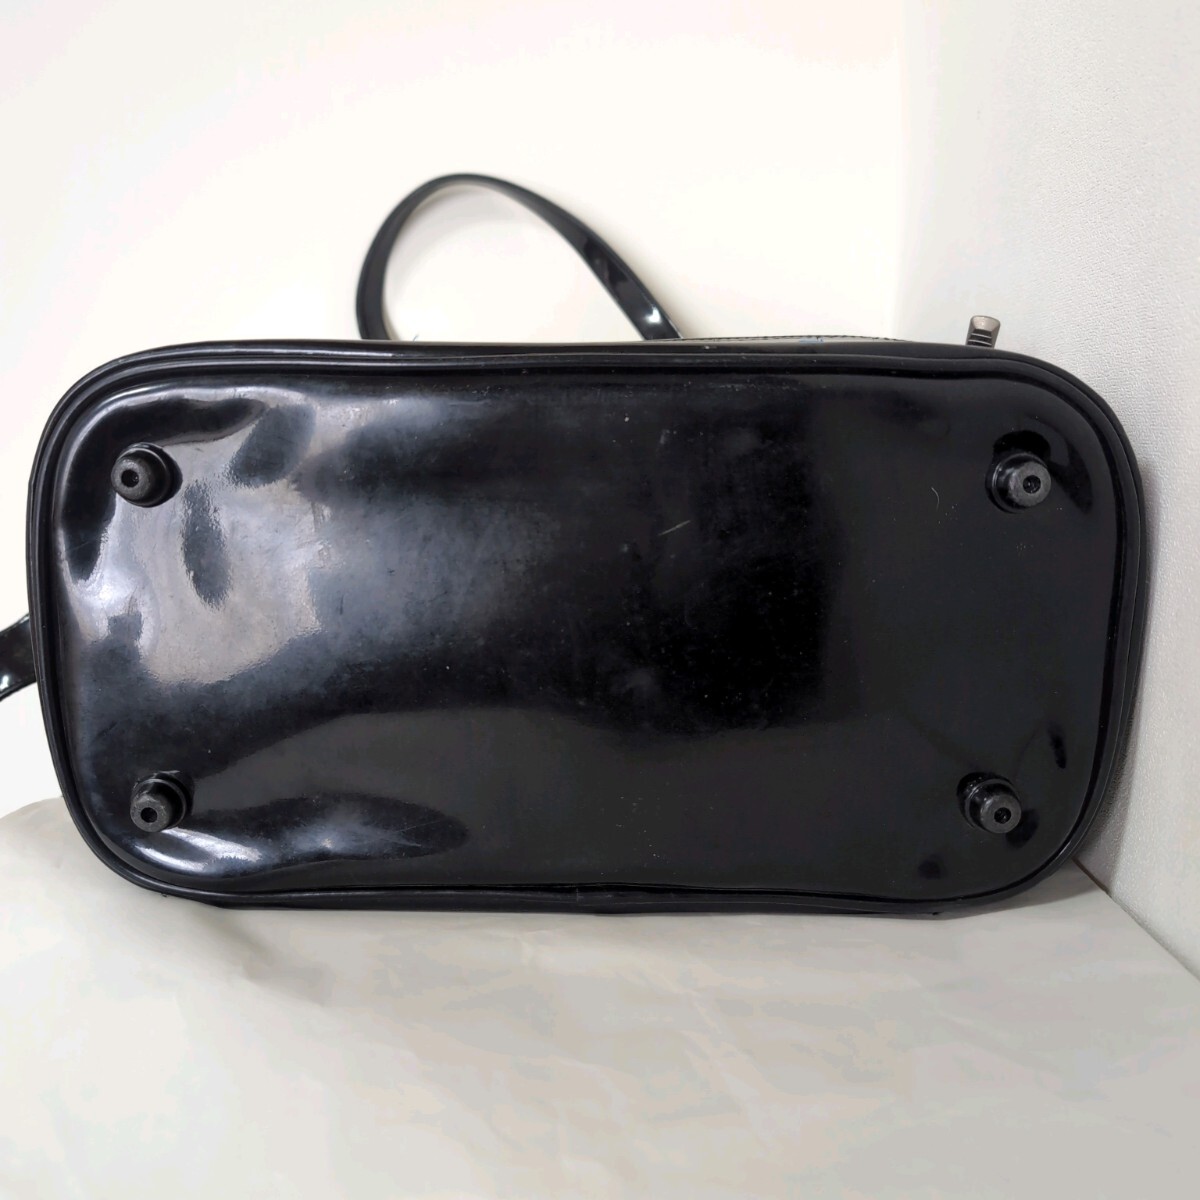 MO■ミズノ ワールドウィン 野球バッグ YS02B メンズ シューズ入れ付き ブラック エナメルバッグ ショルダーバッグ セカンドバッグ 鞄の画像6